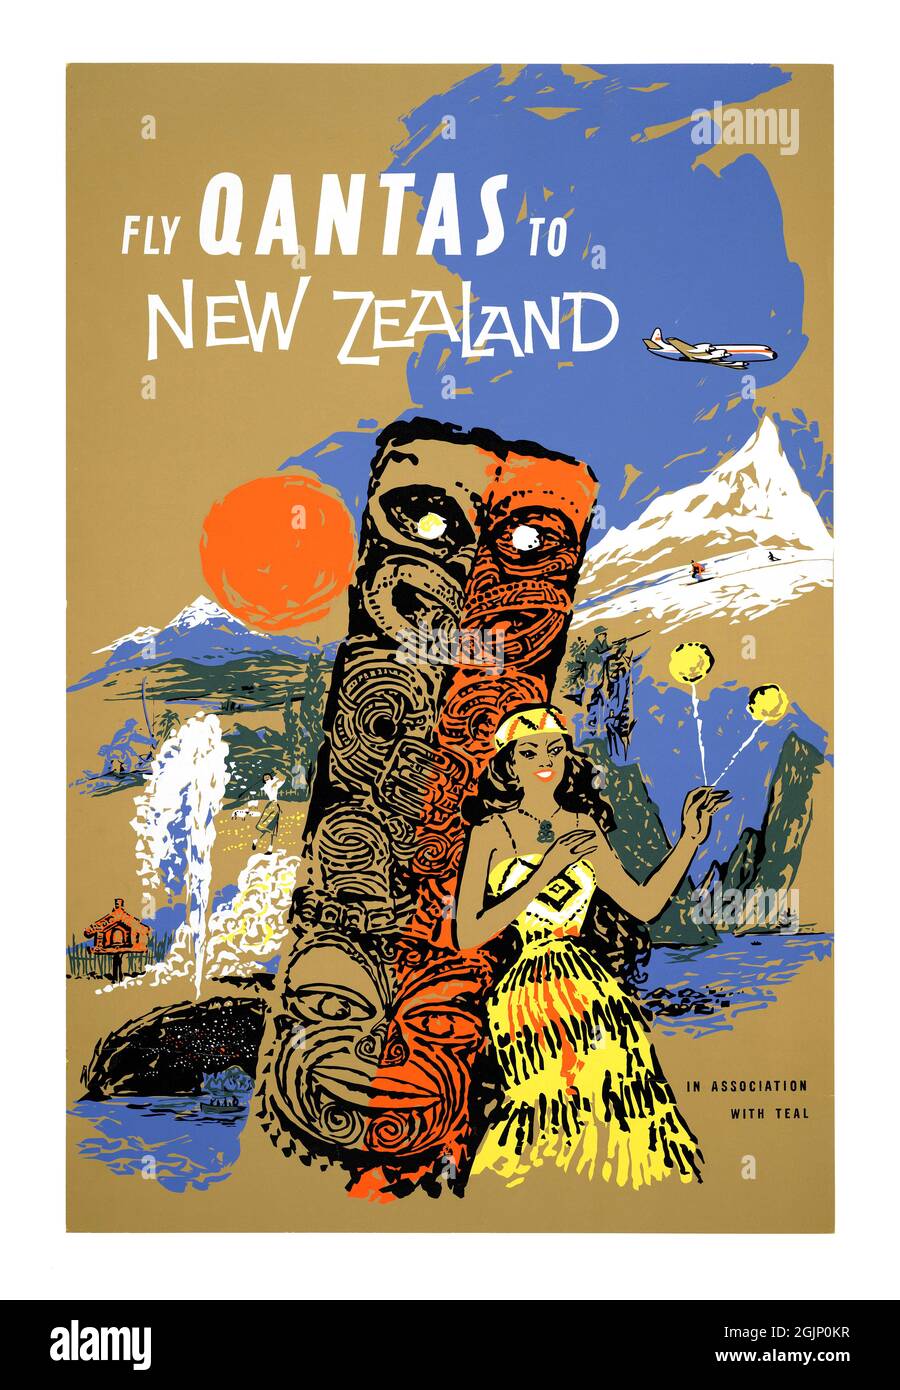 Envolez Qantas en Nouvelle-Zélande, en association avec LE TEAL.Artiste inconnu.Affiche ancienne restaurée publiée dans les années 1950 en Nouvelle-Zélande. Banque D'Images